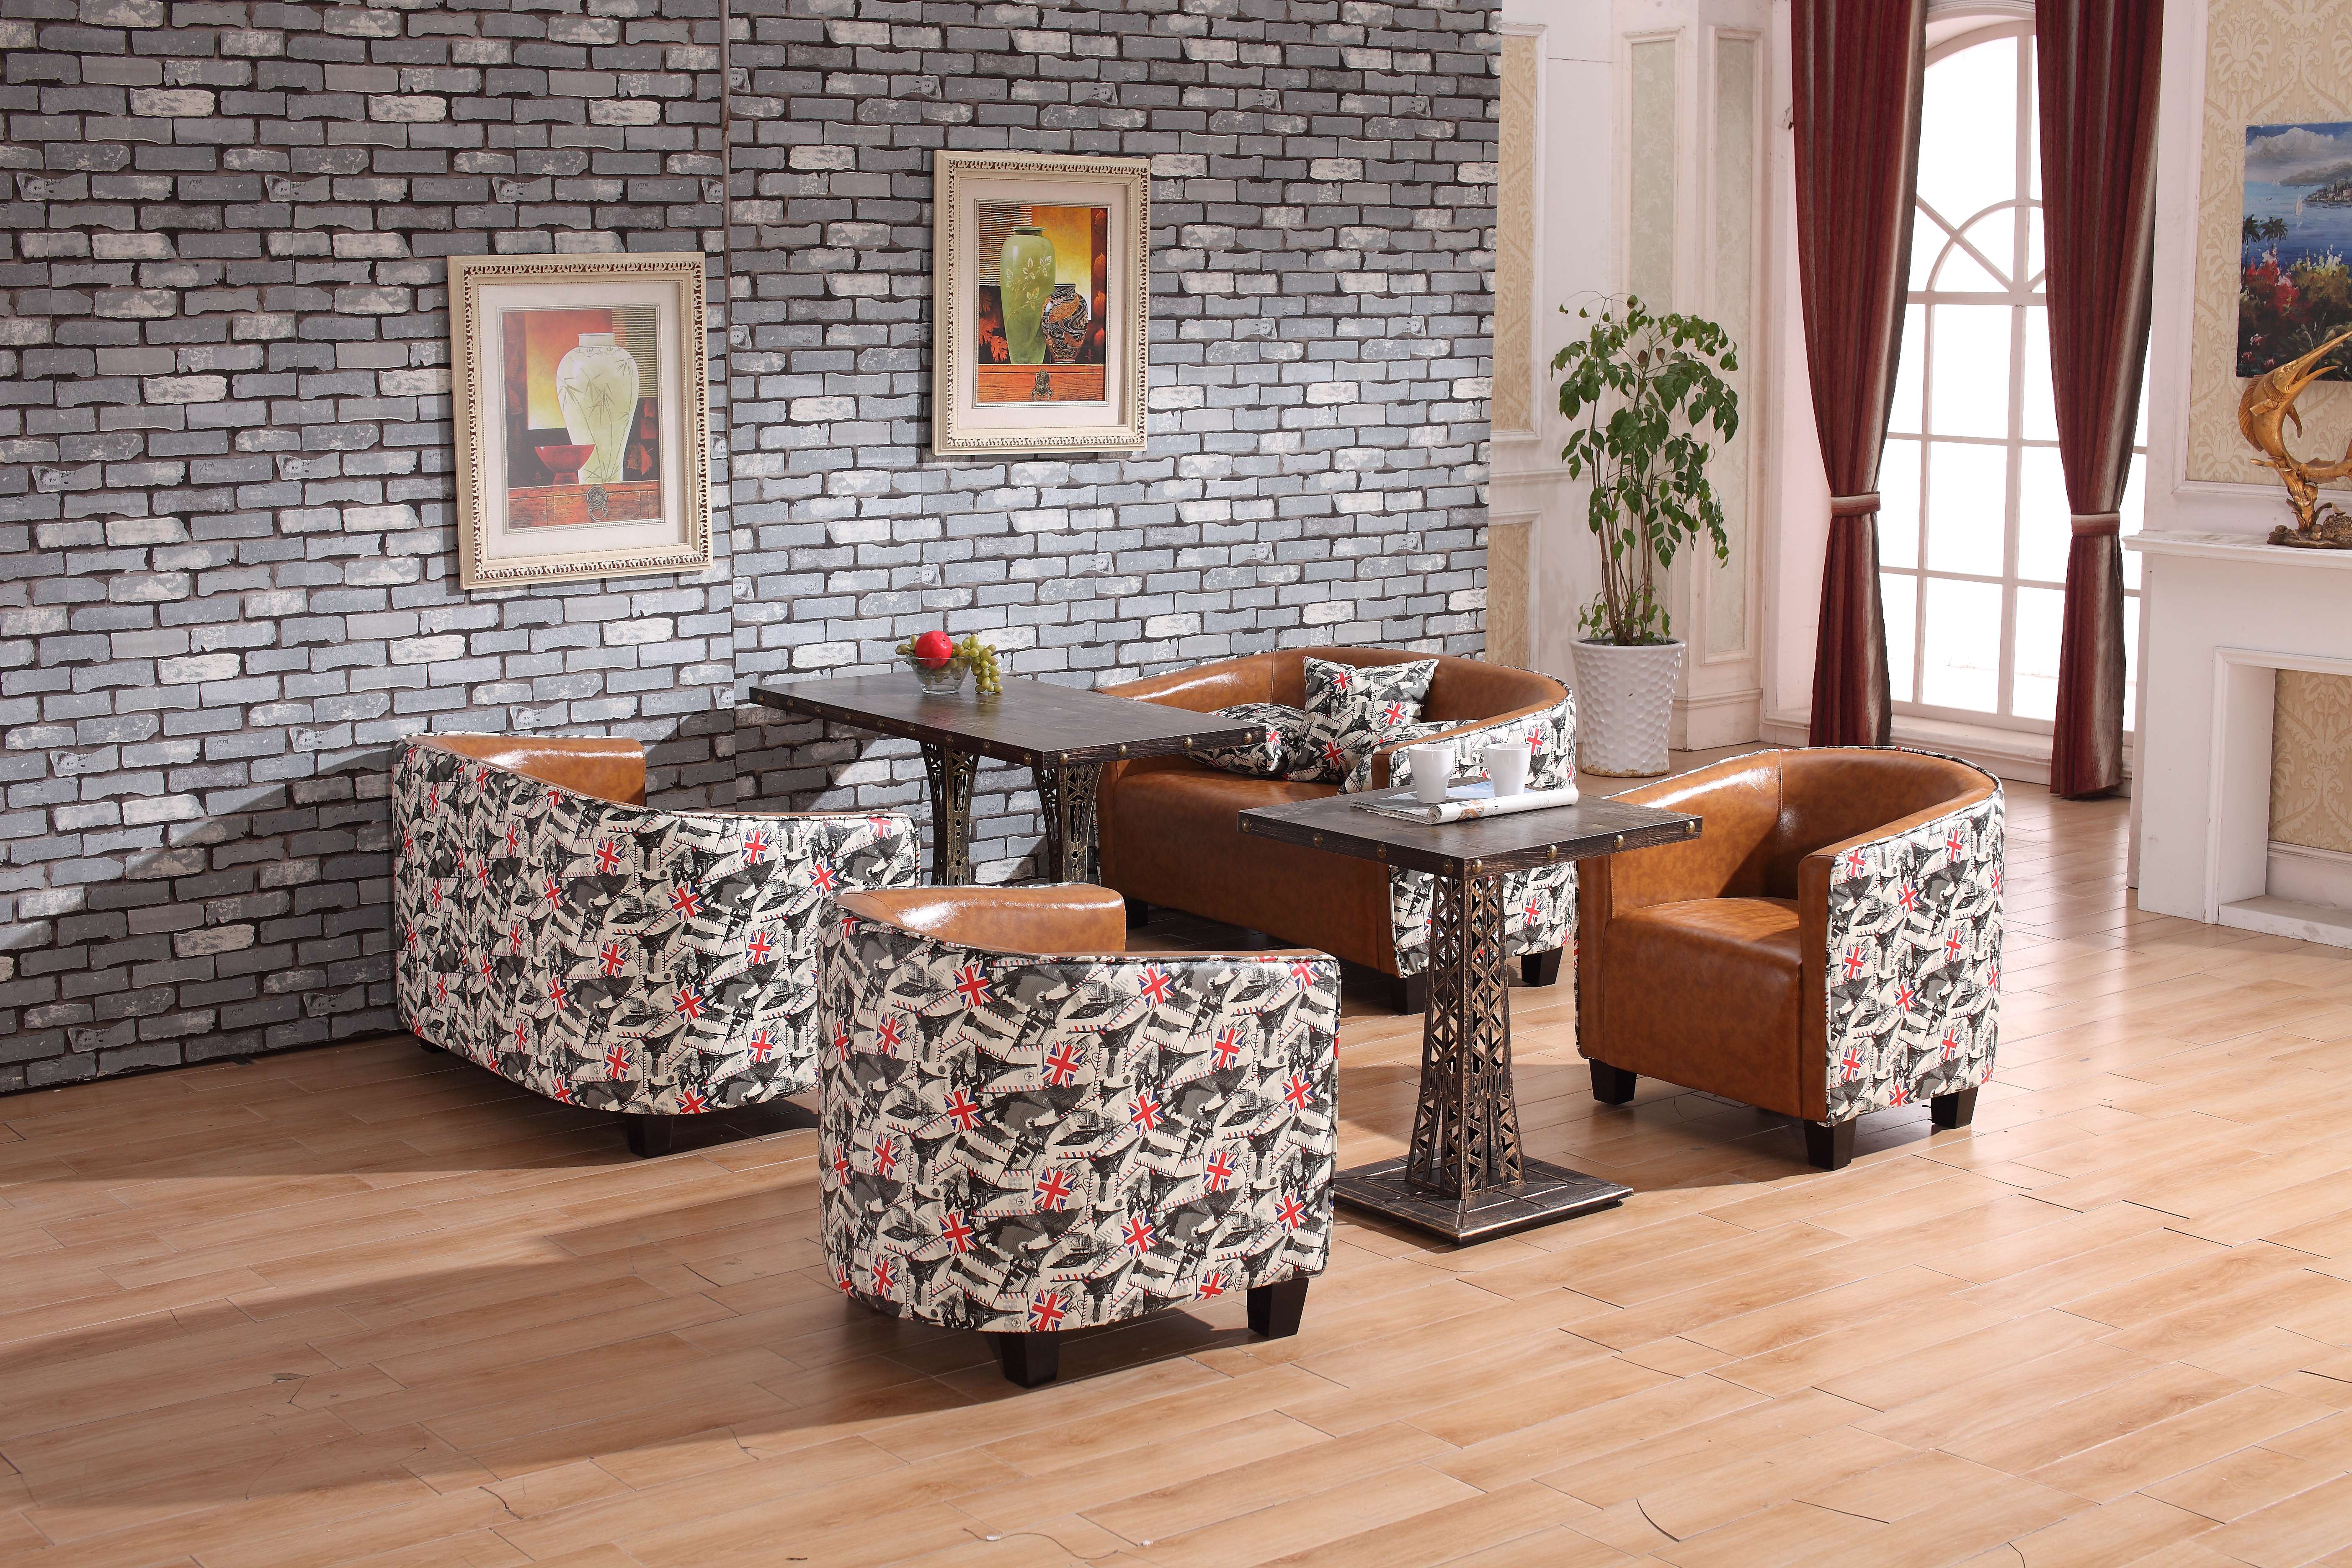 咖啡厅奶茶店休闲沙发铆钉沙发卡座桌椅组合厂家直销西餐厅沙发厂家咖啡厅个性简约沙发定做图片